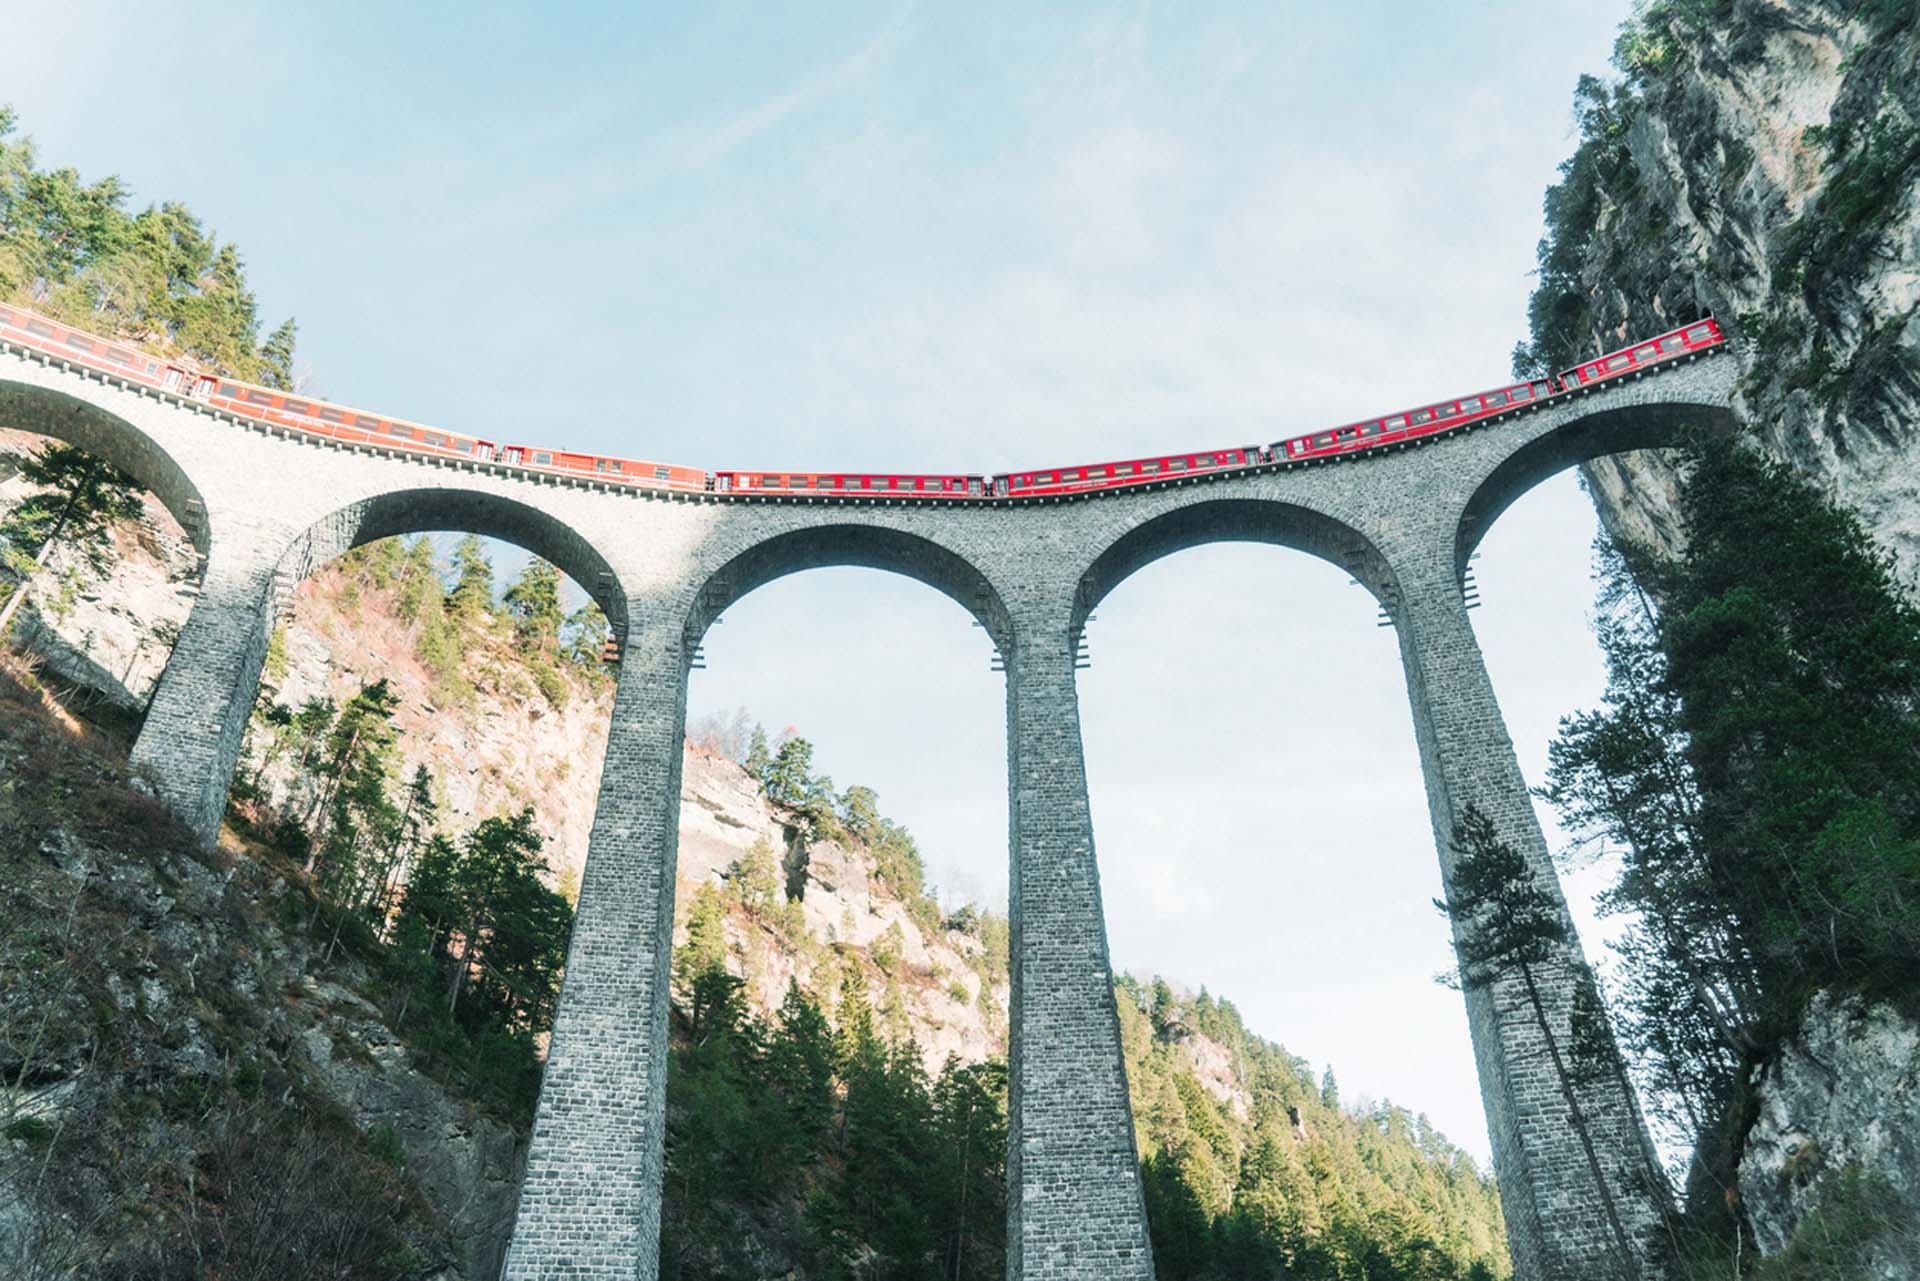 Zug überquert historische Steinbogenbrücke mit Strukturüberwachung zur Gewährleistung von Stabilität und Sicherheit.